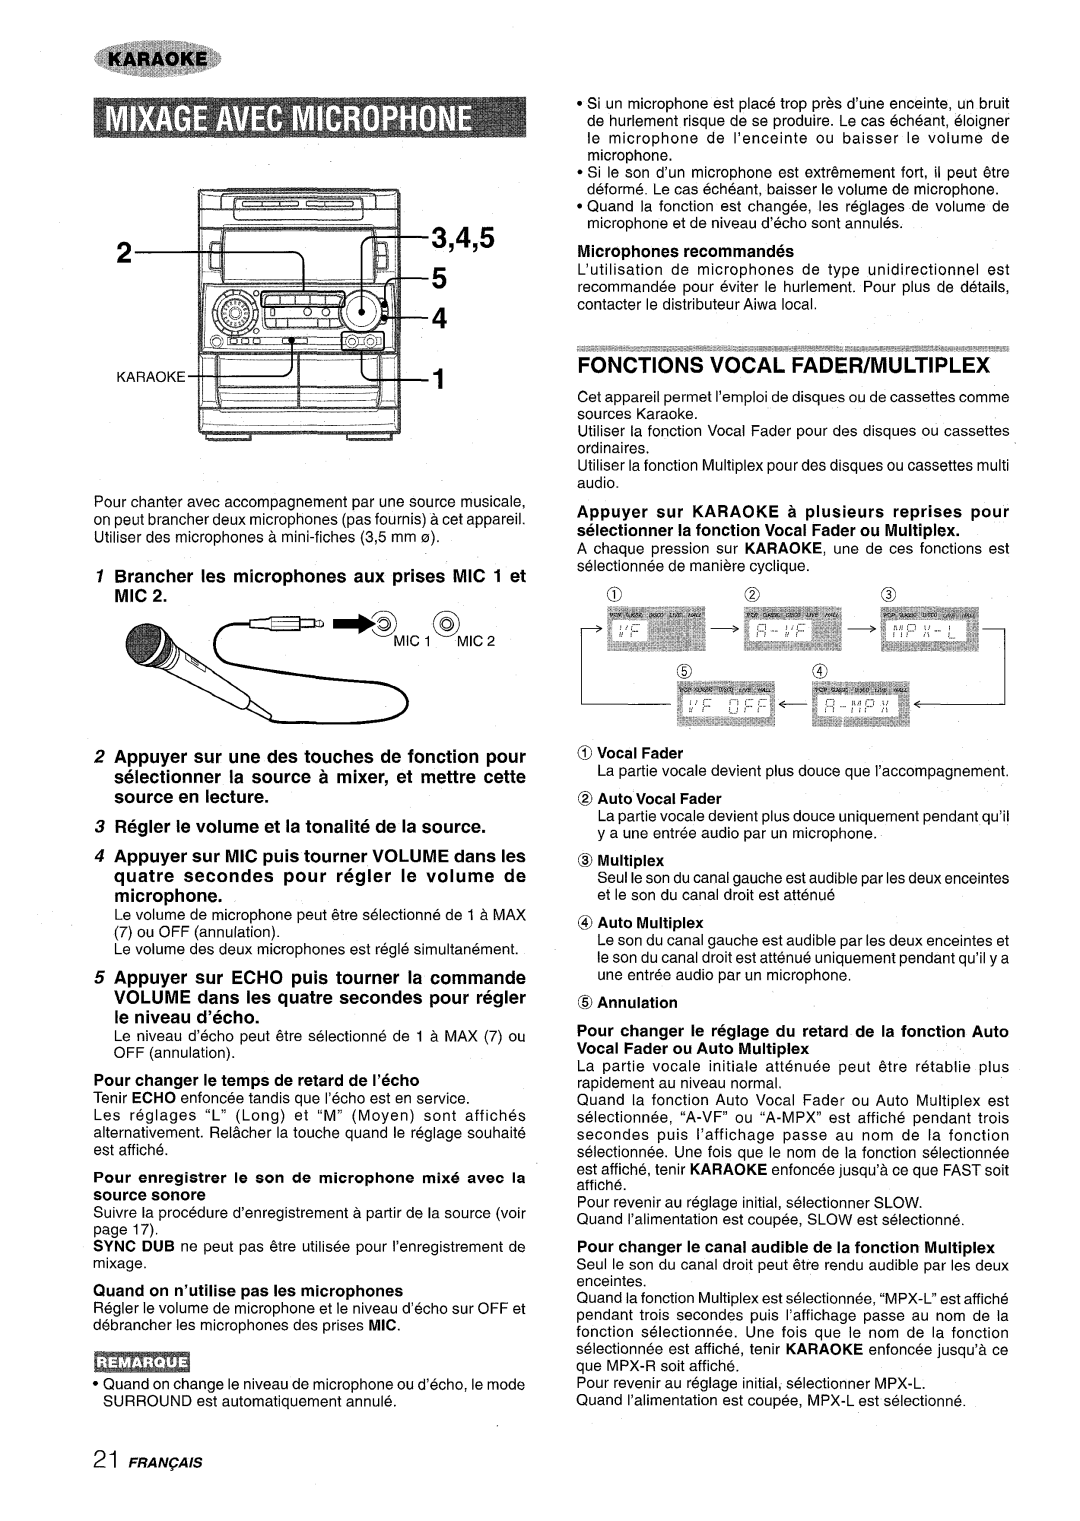 Aiwa NSX-A909 manual 3,4,5, Brancher les microphones aux prises MIC 1 et MIC, Regler Ie volume et la tonalite de la source 